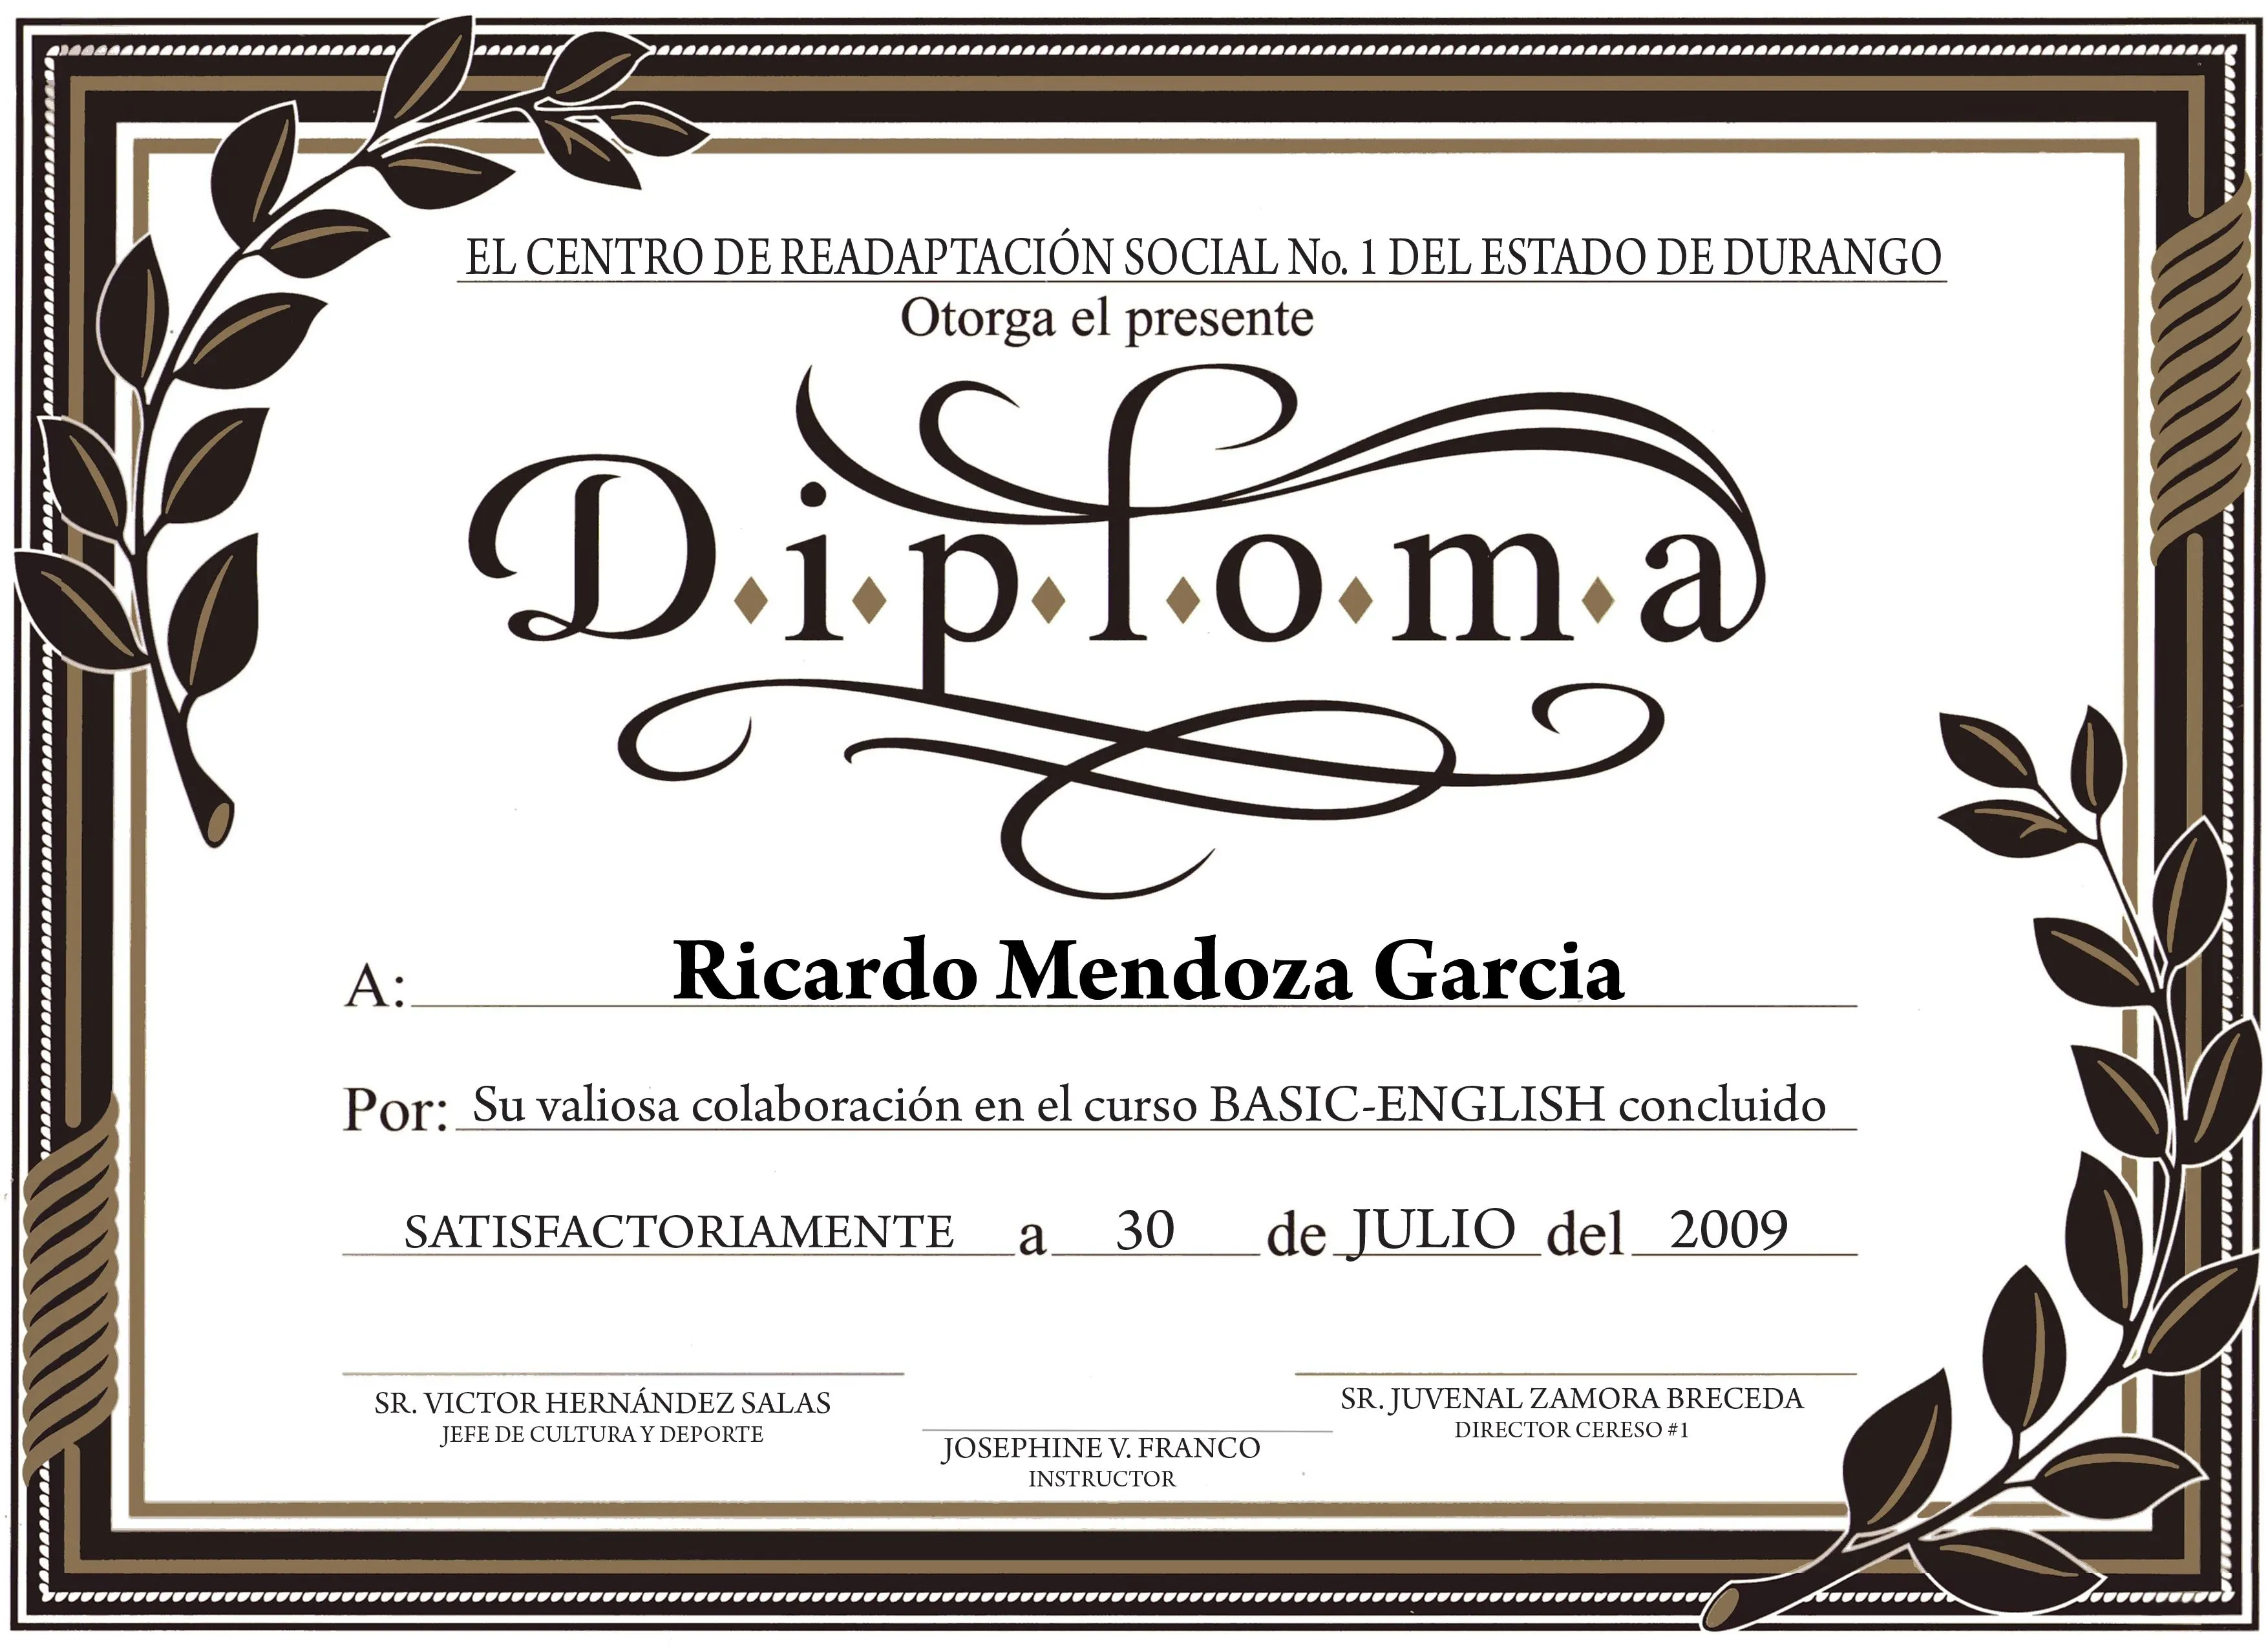 Diplomas Diploma de fondo de pantalla | diploma | Pinterest ...